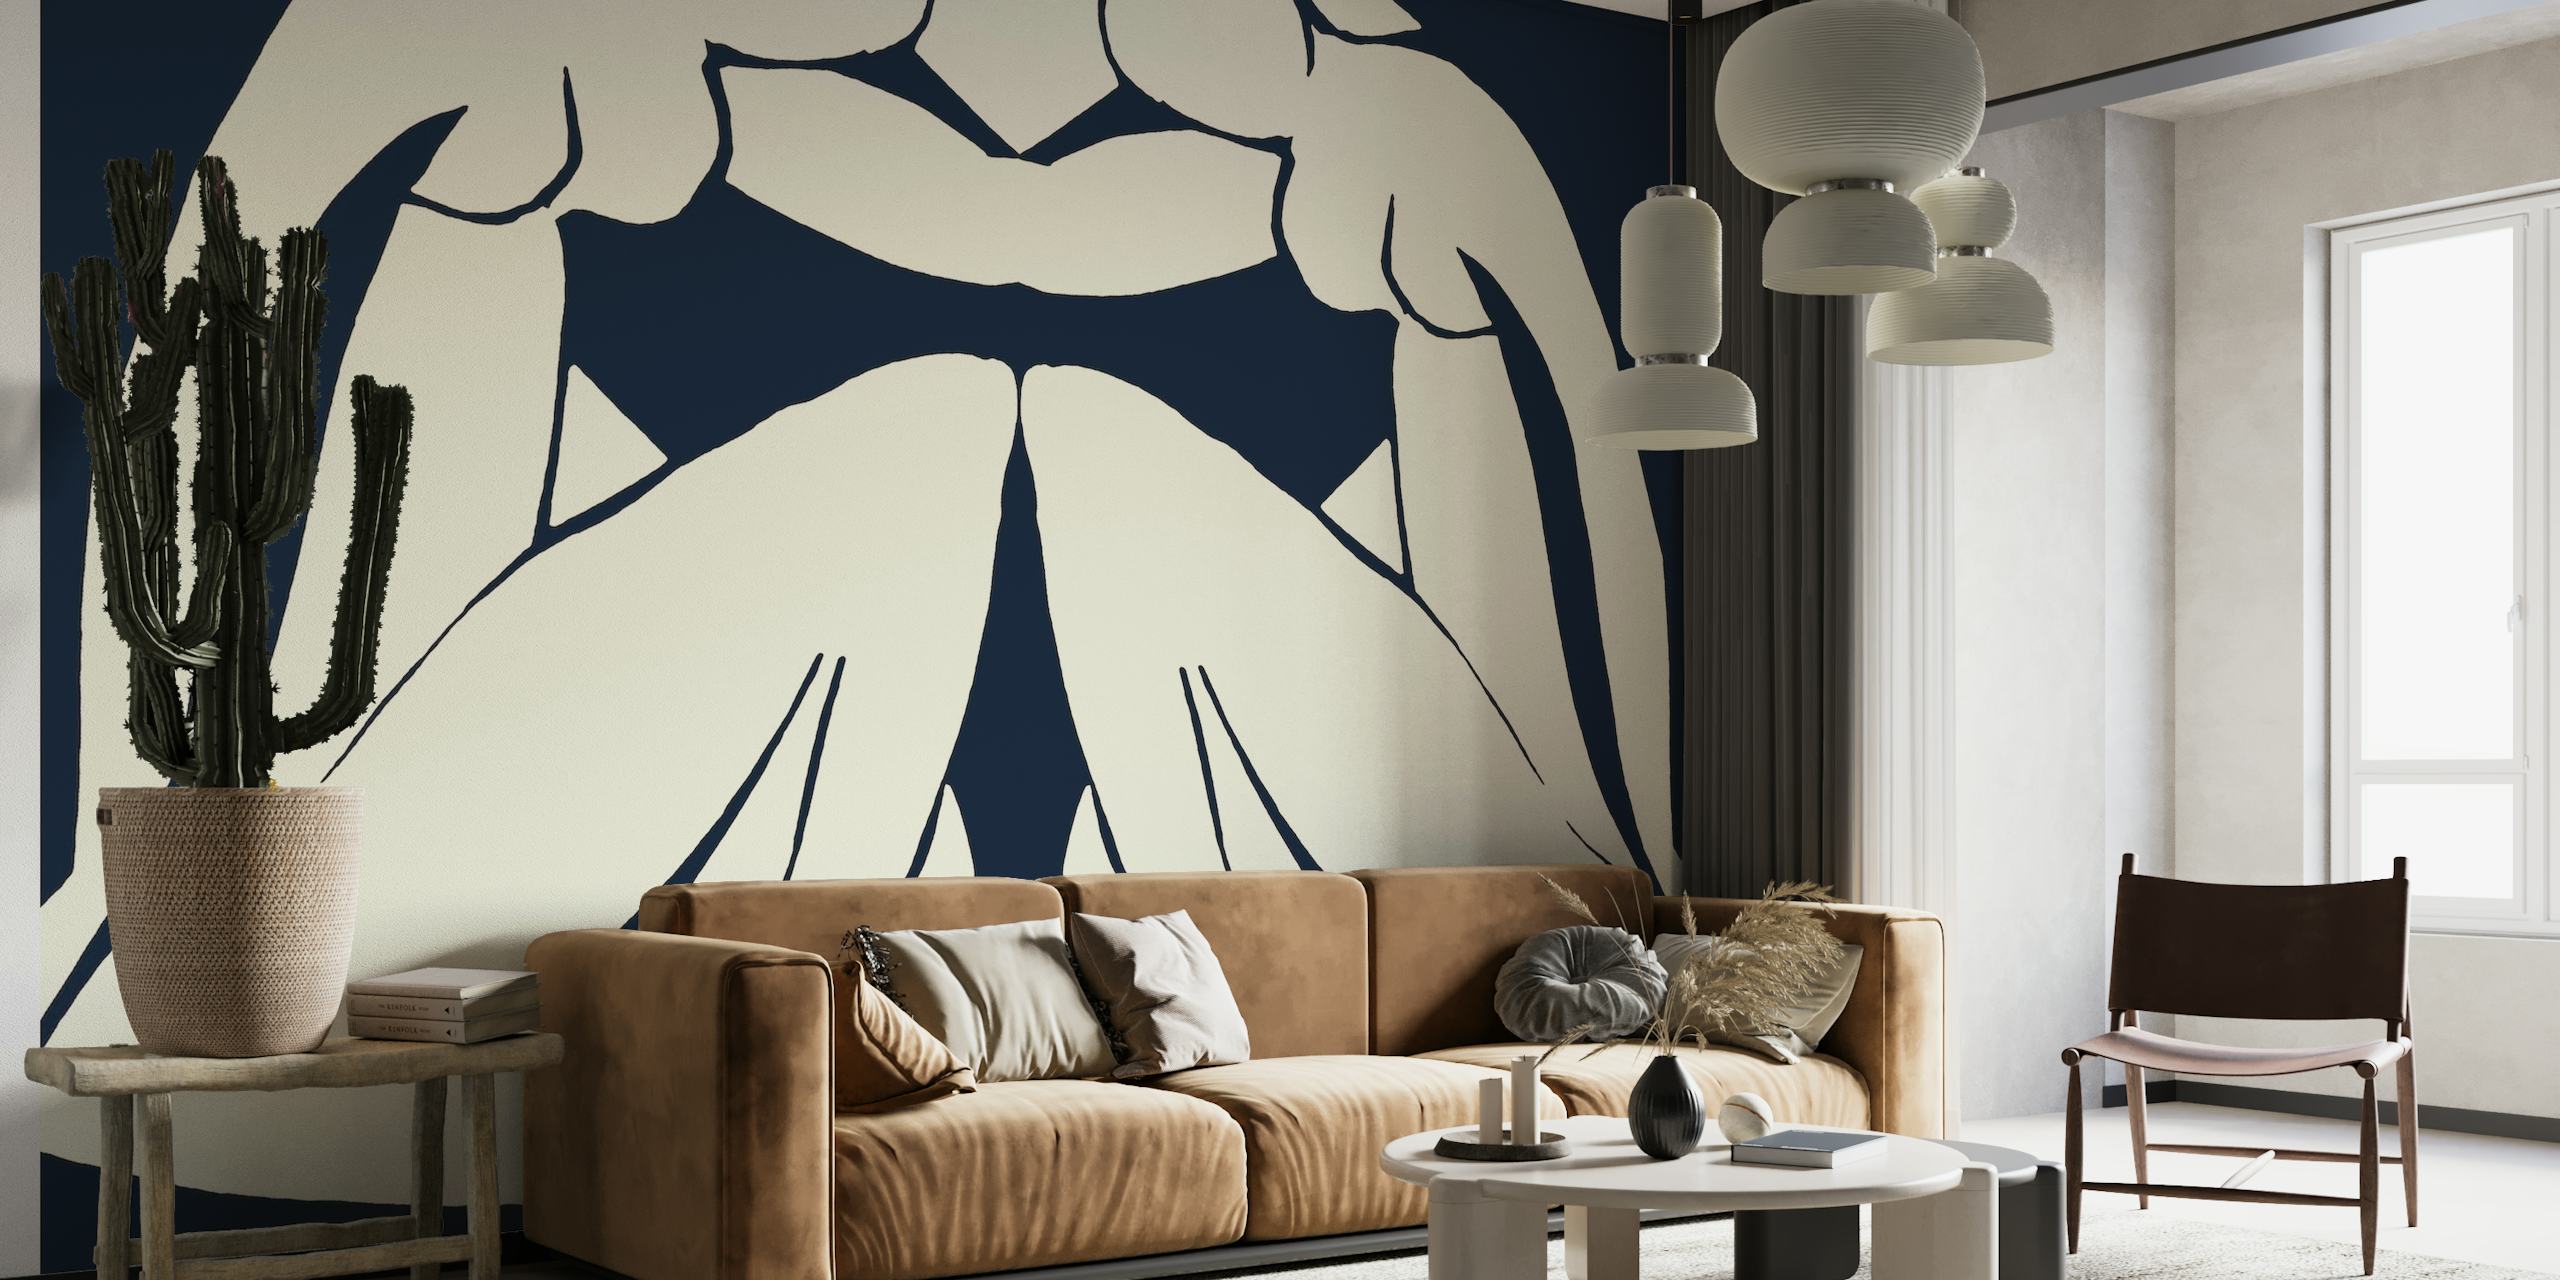 Matisse Sisters abstrakt siluetttapet i marinblått och vitt